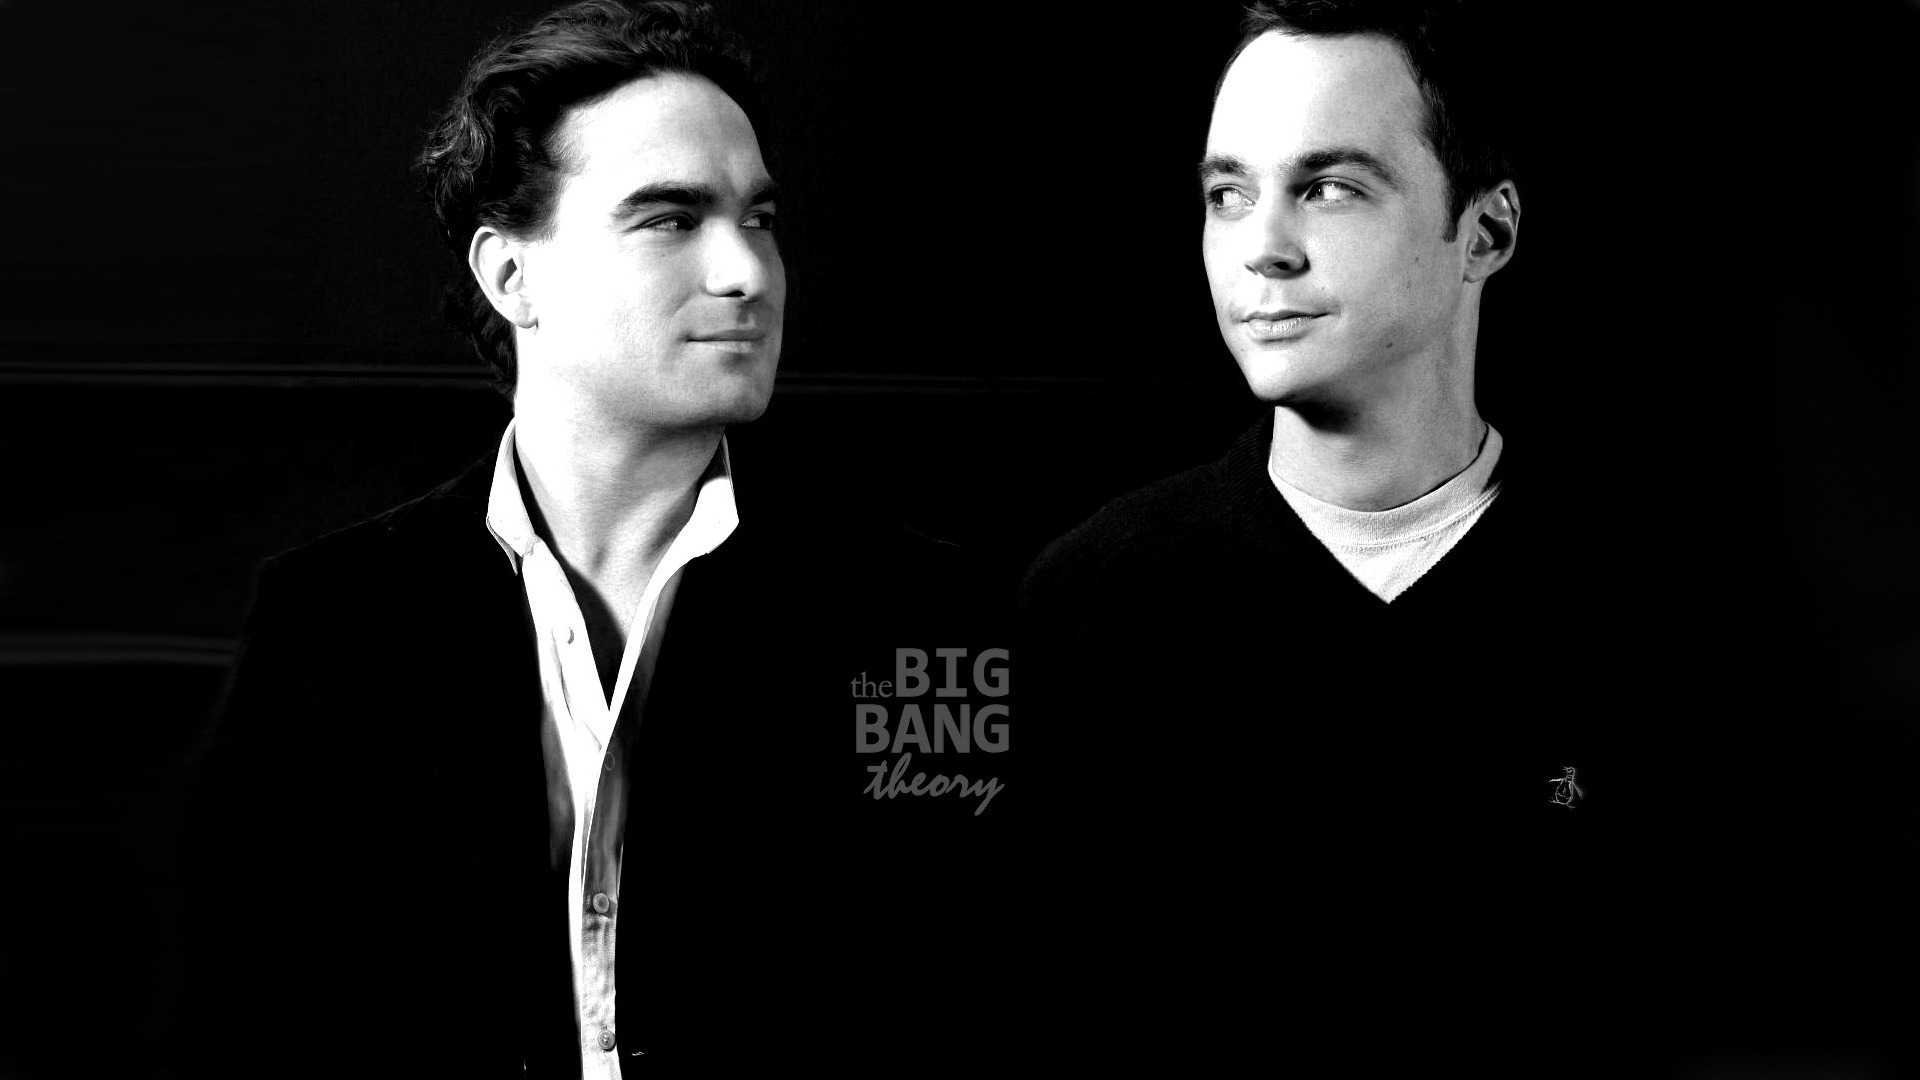 The Big Bang Theory Leonard and Sheldon for 1920 x 1080 HDTV 1080p resolution